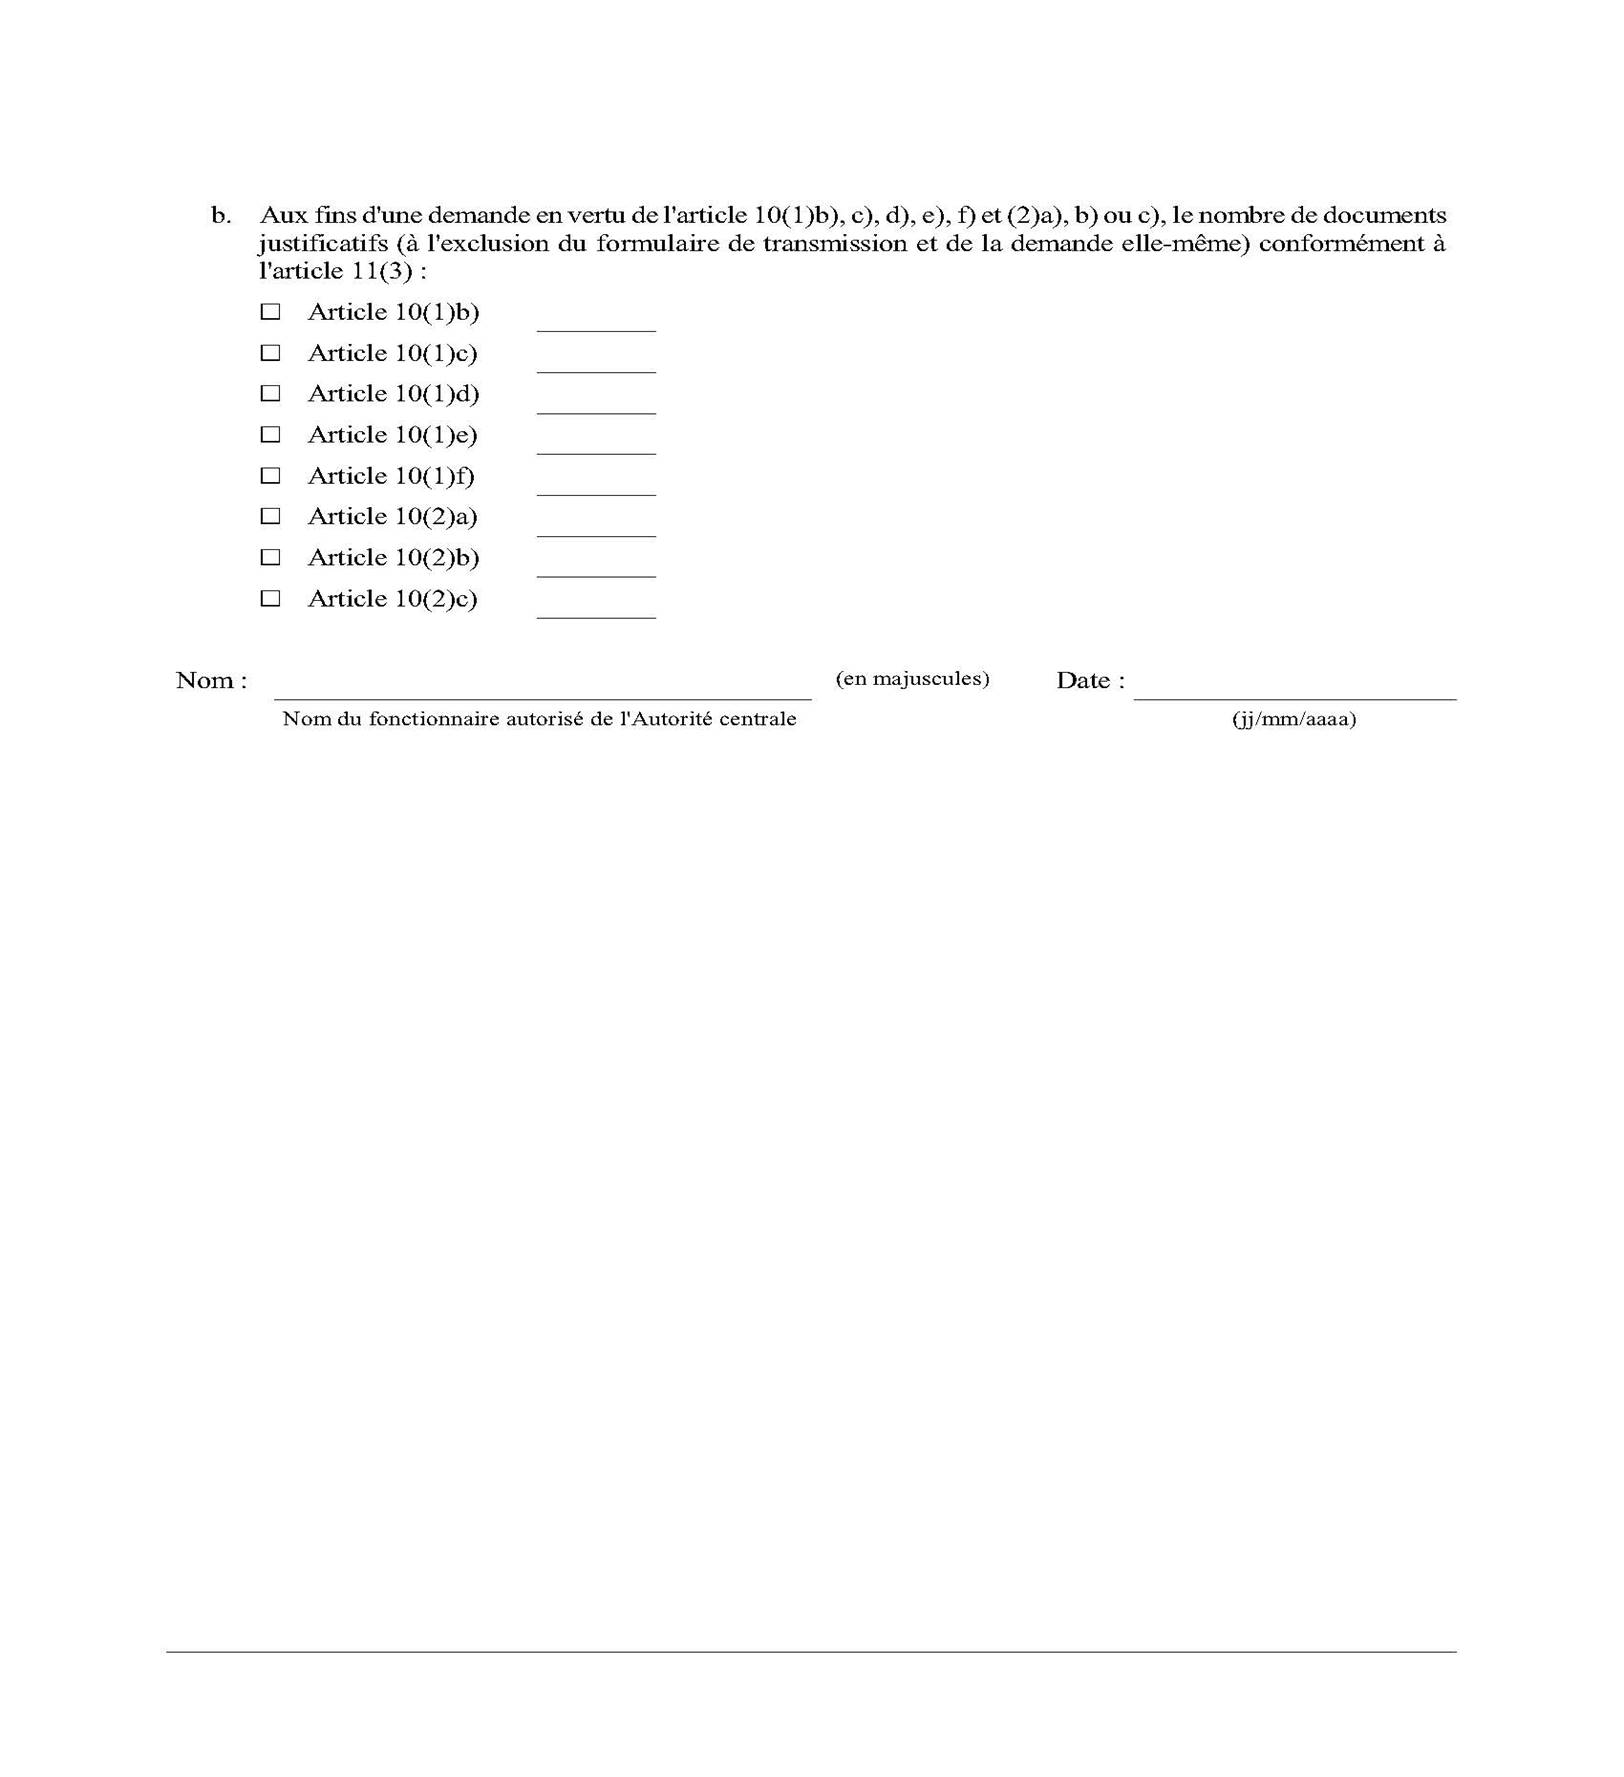 Page 4 du Formulaire de transmission en vertu de l'article 12(2)

Description automatically generated with medium confidence